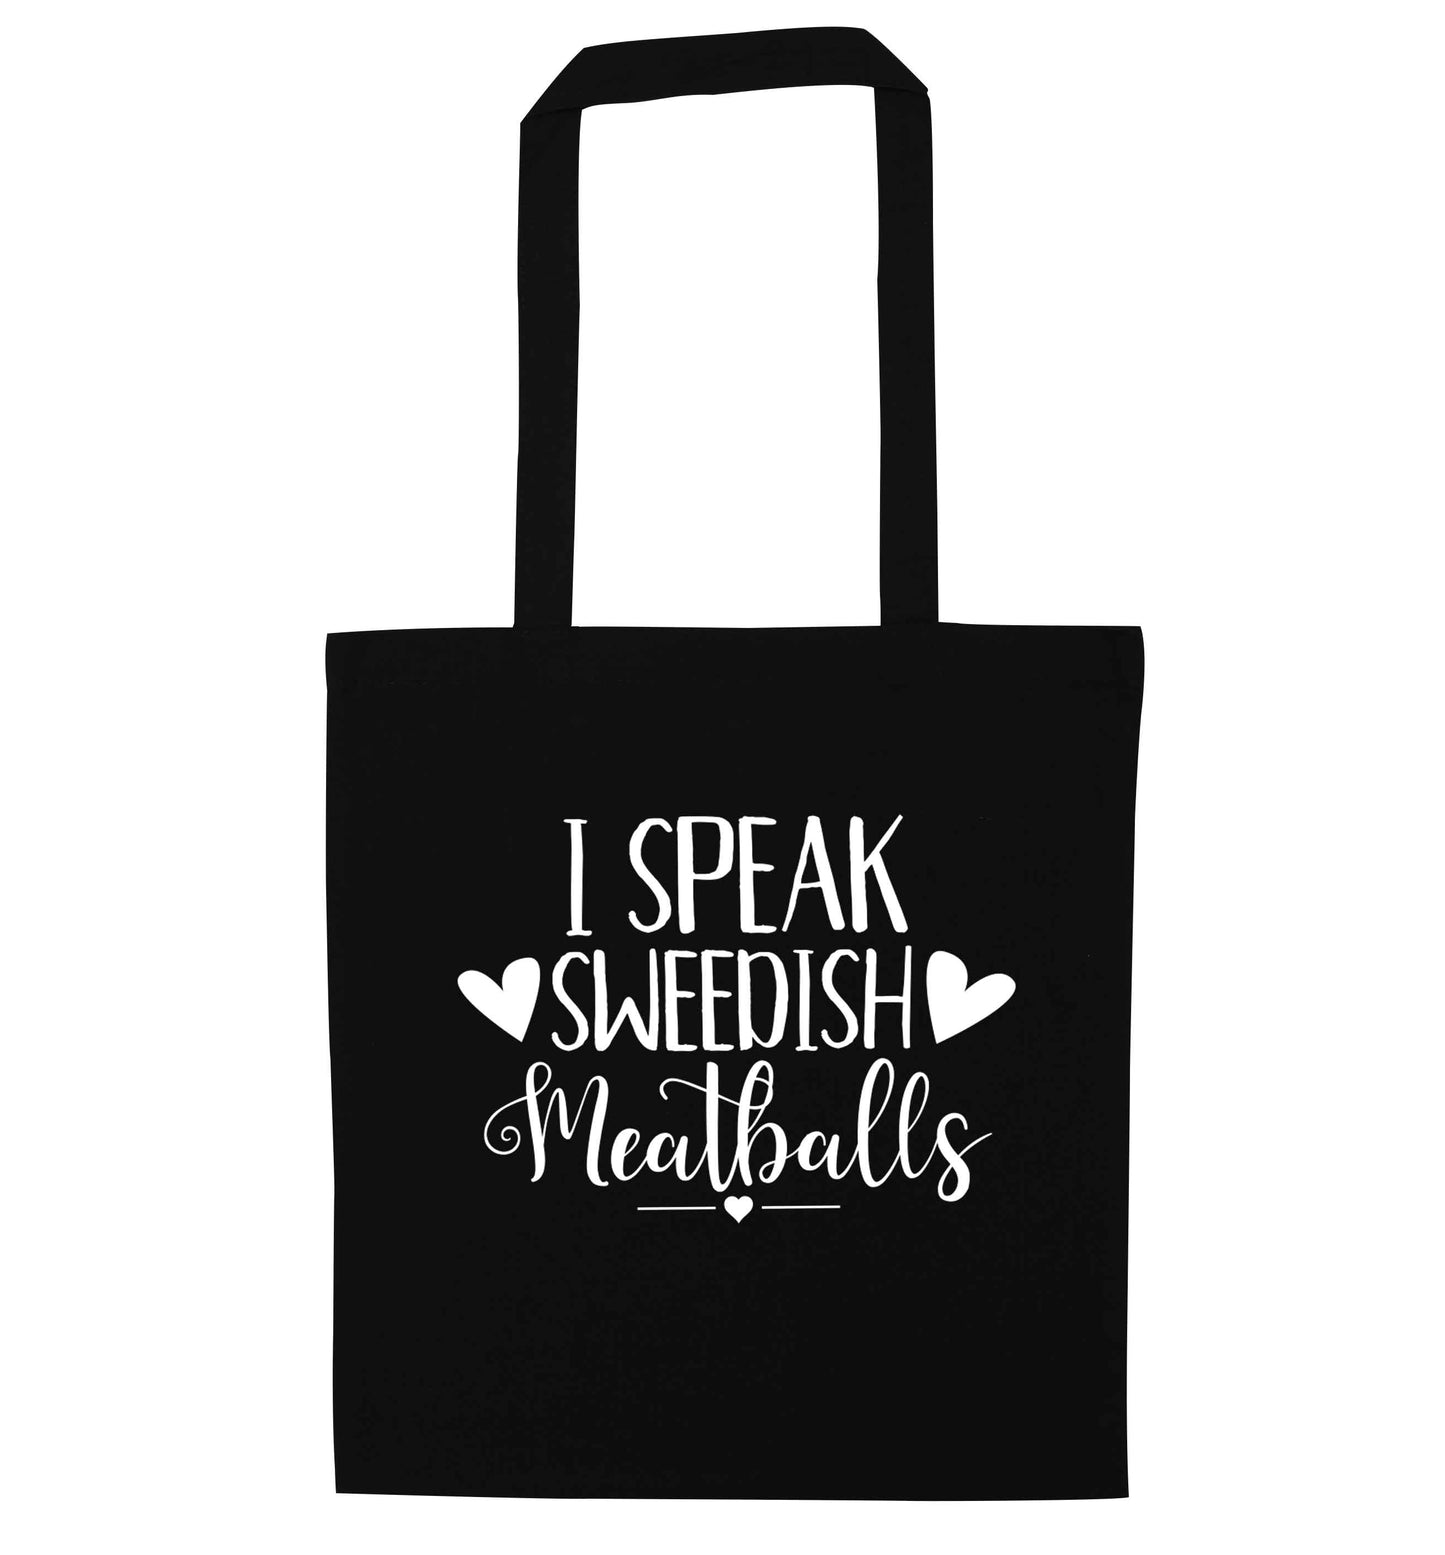 I speak sweedish...meatballs black tote bag